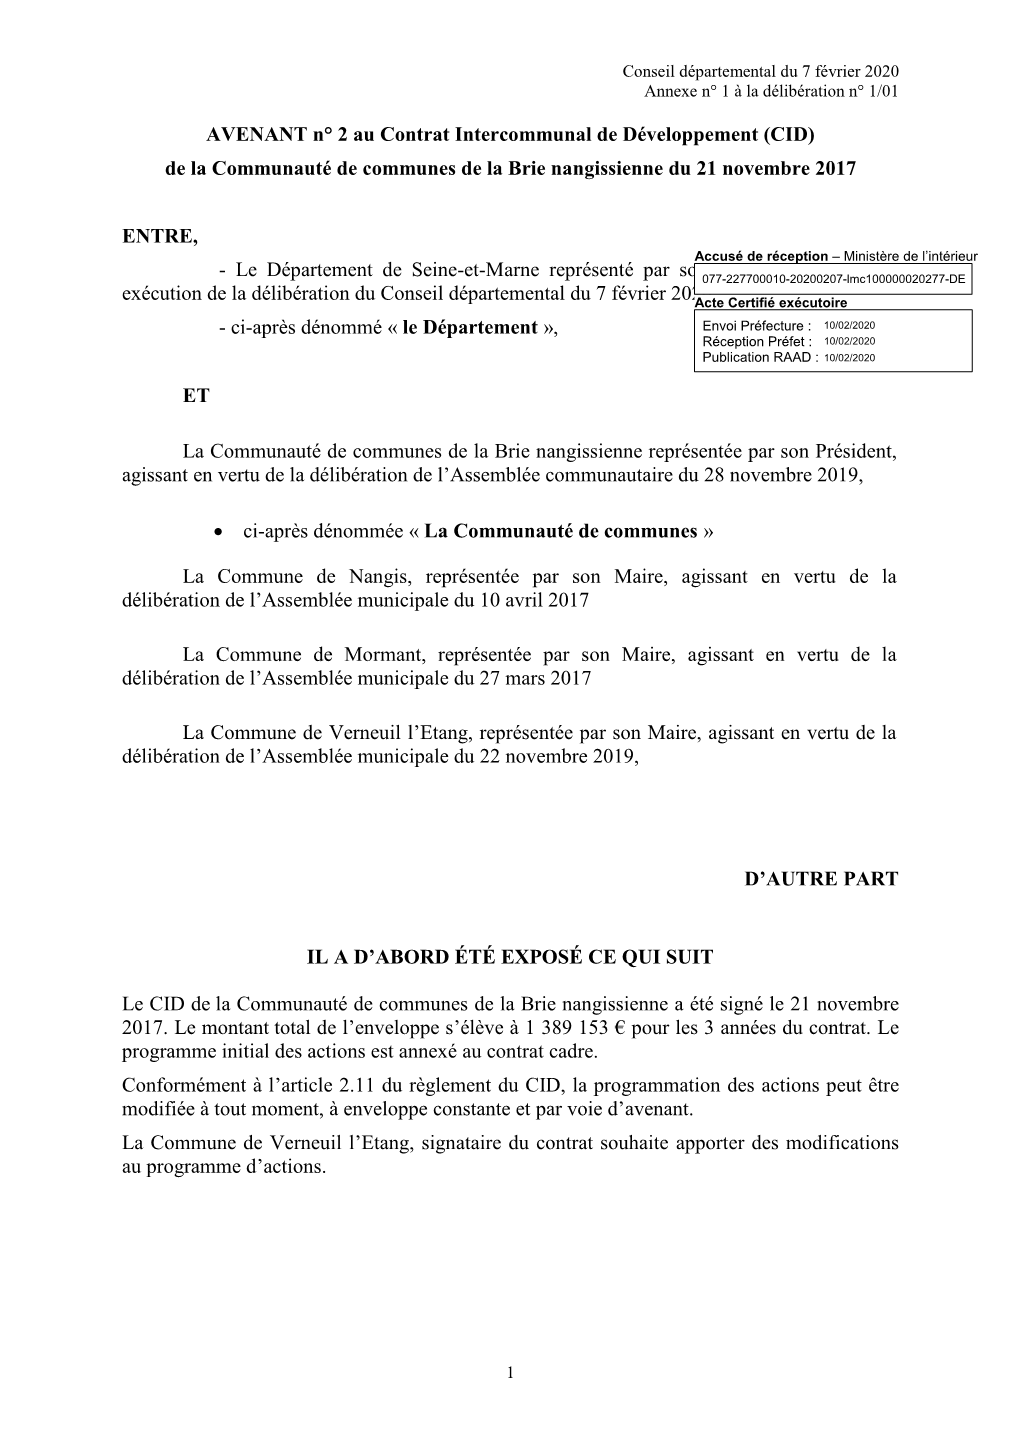 AVENANT N° 2 Au Contrat Intercommunal De Développement (CID) De La Communauté De Communes De La Brie Nangissienne Du 21 Novembre 2017